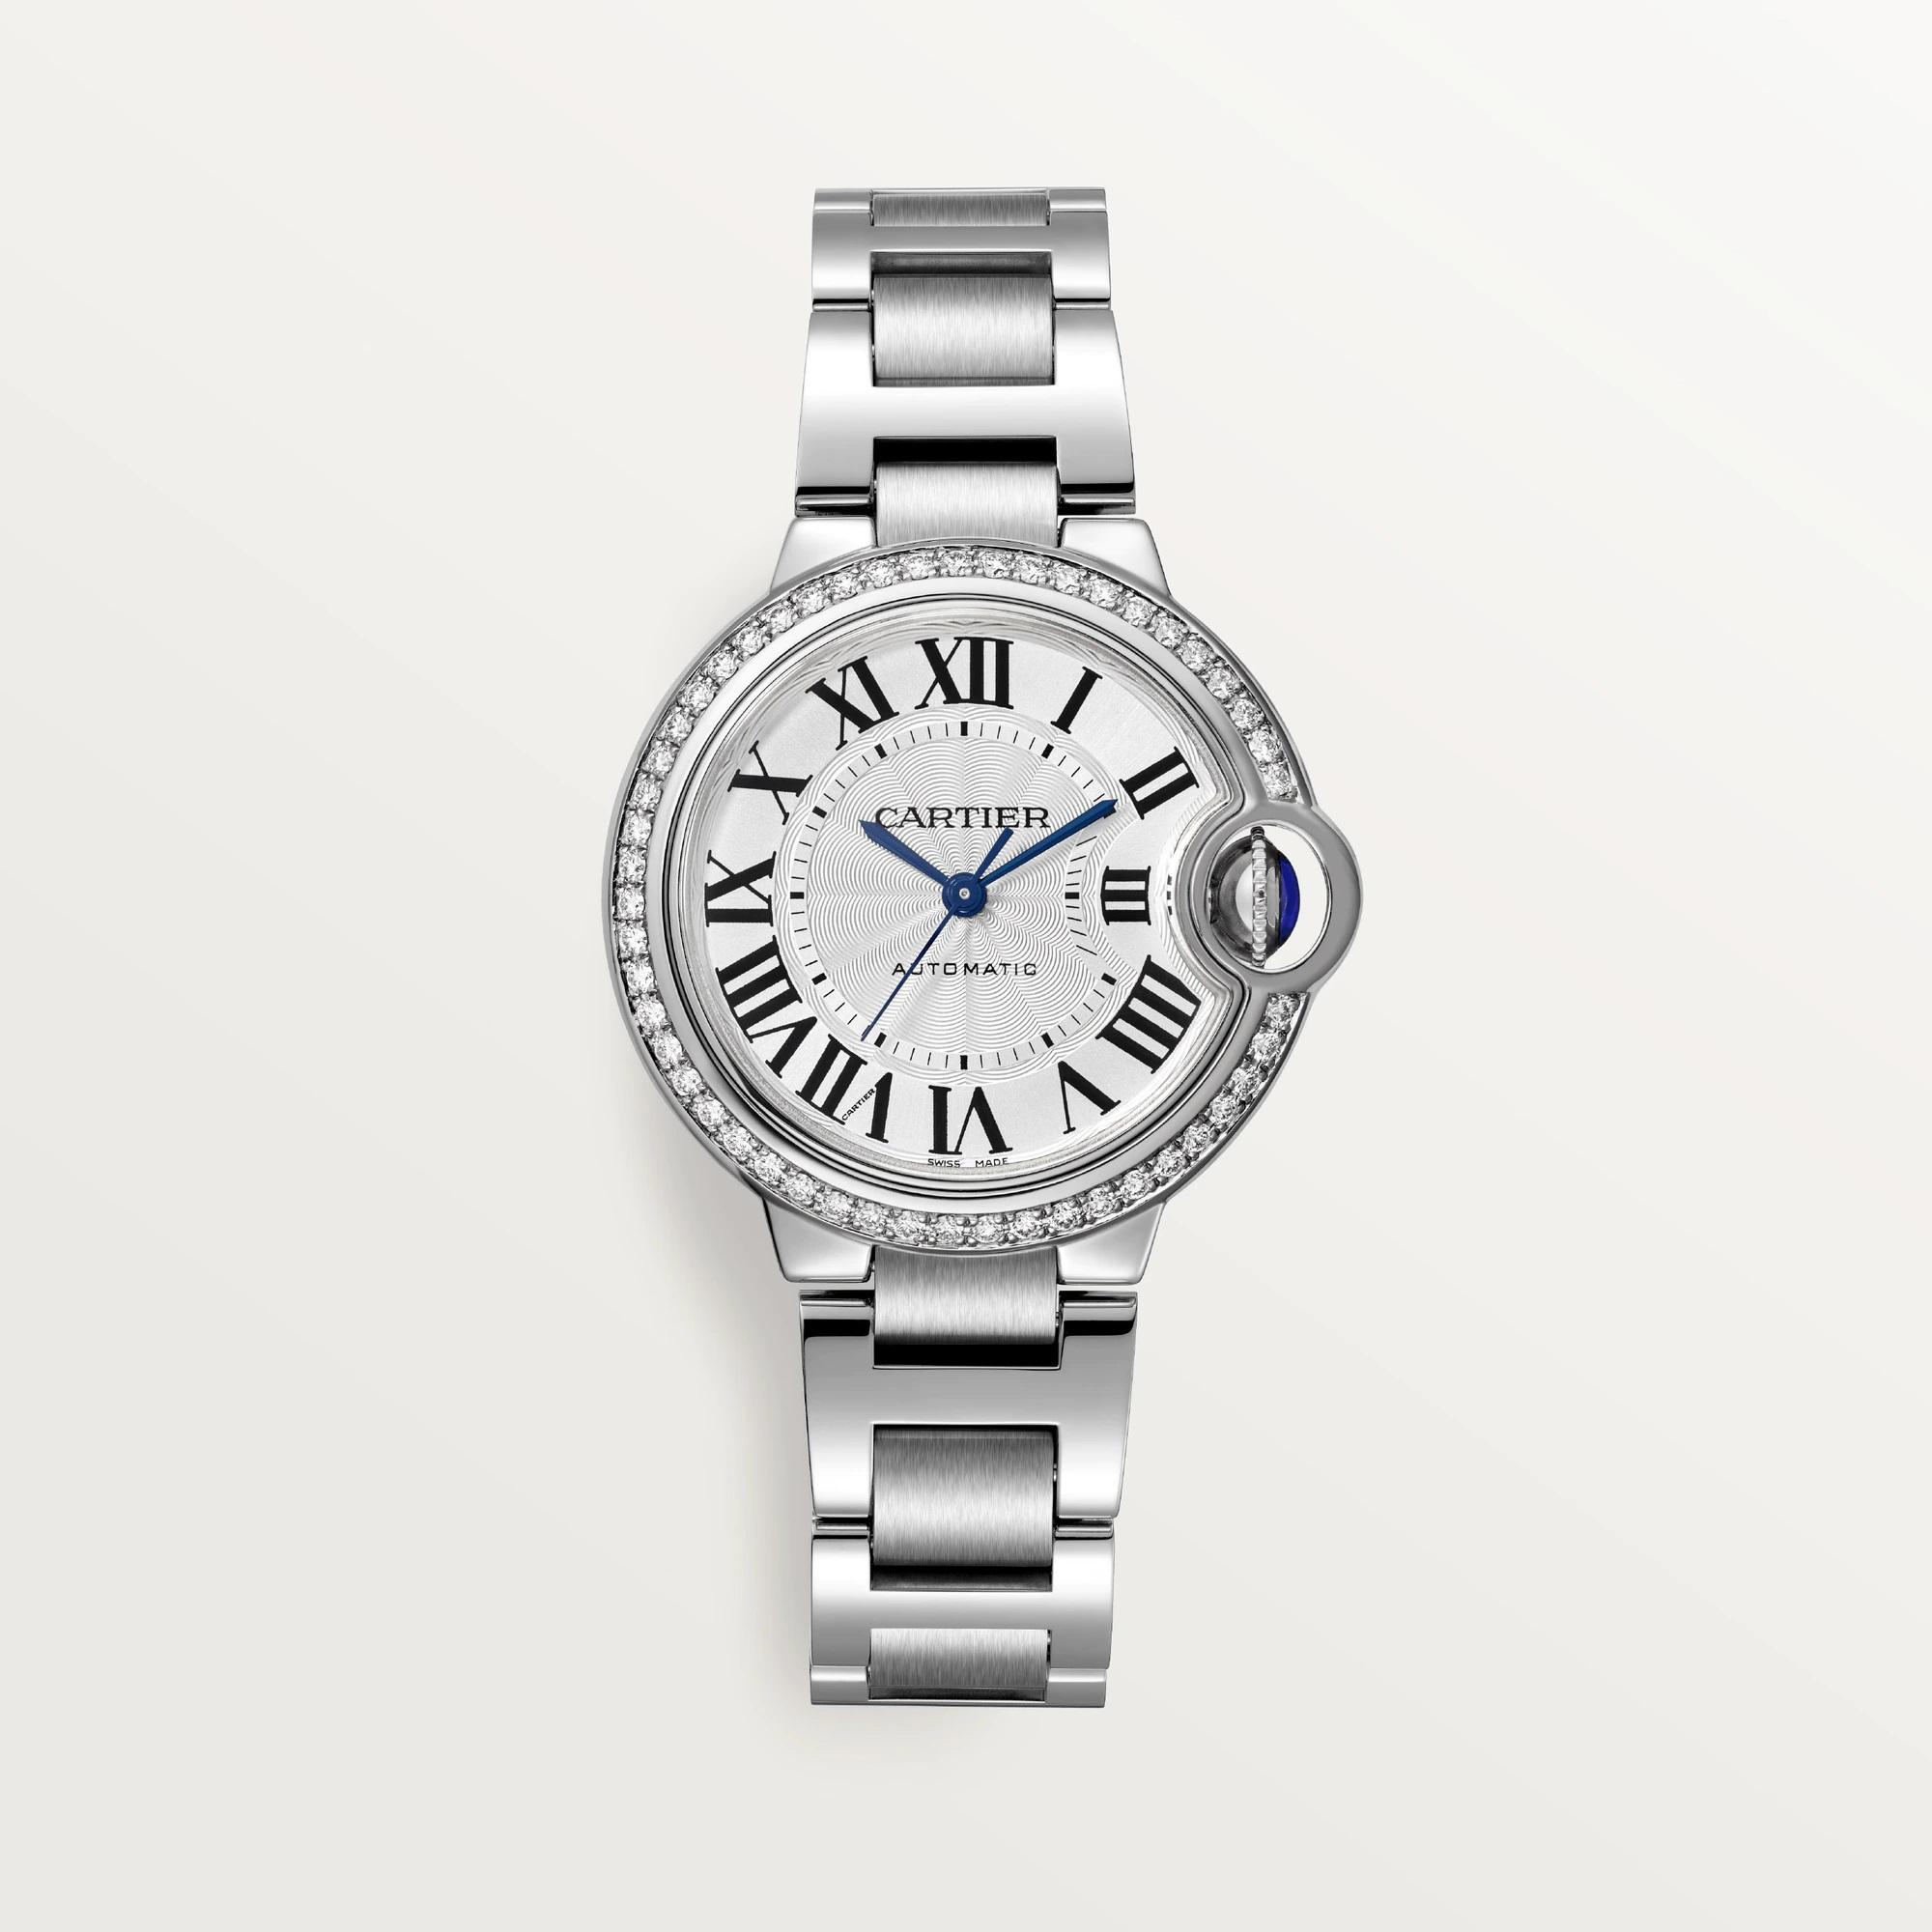 Ballon Bleu de Cartier Watch, Silver Guilloche Dial with Diamonds, 33mm